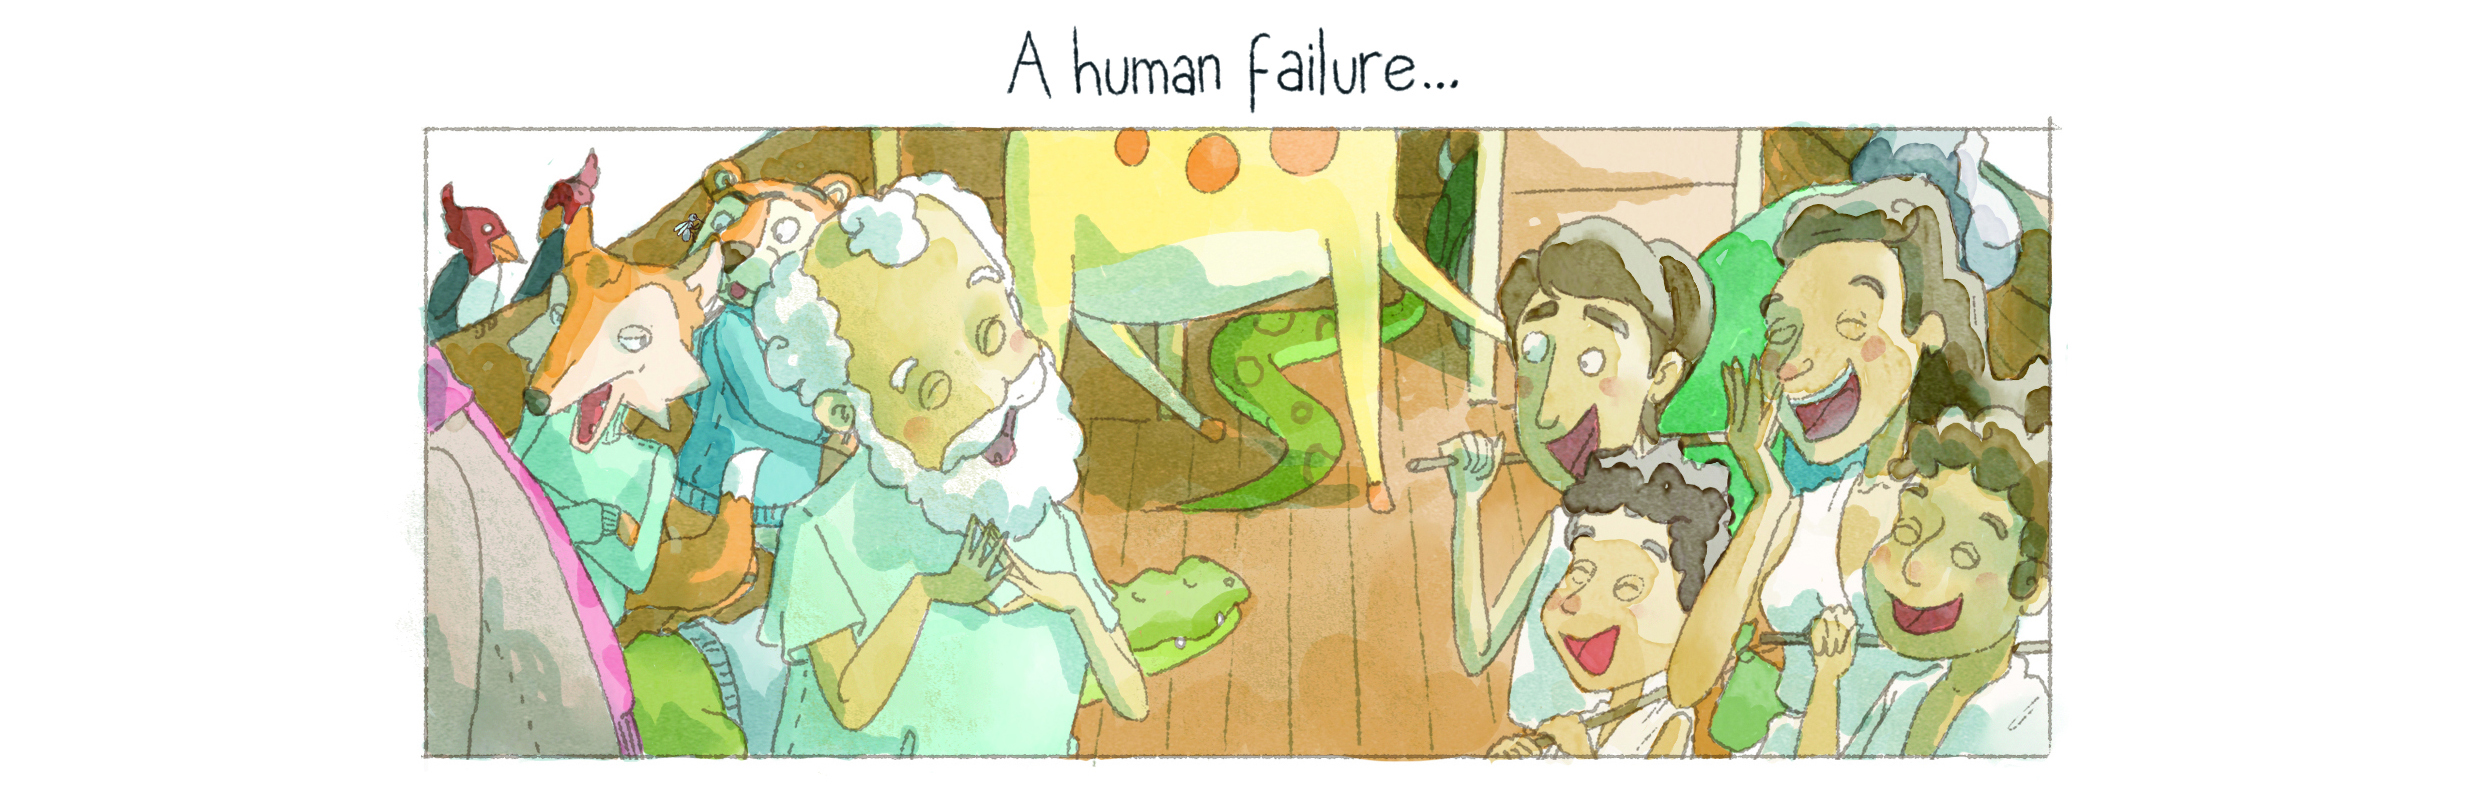 a human failure (2)